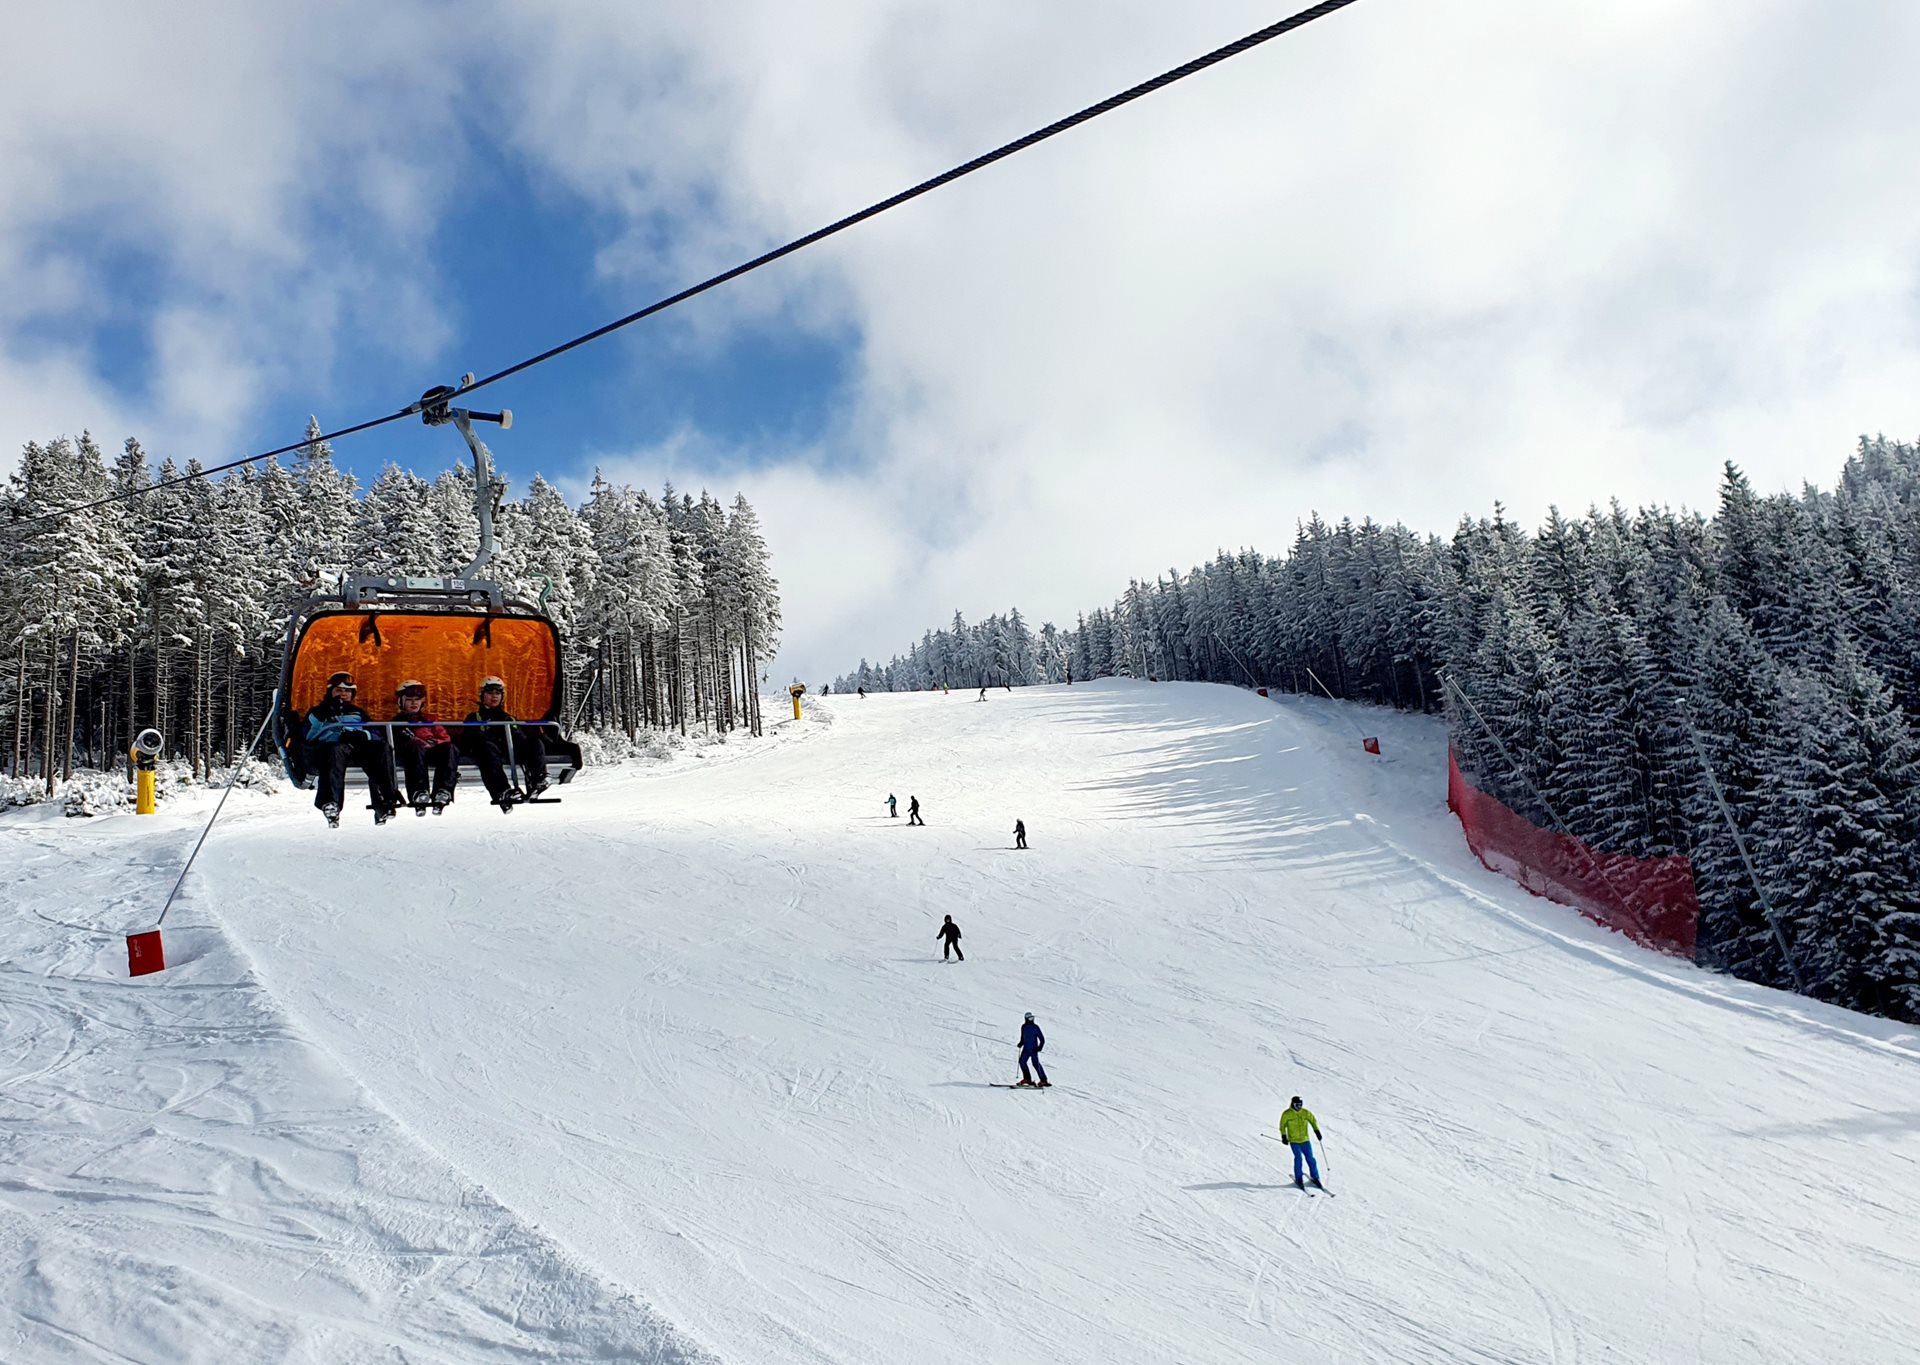 Zimní sezóna byla pro skiareály náročná, ale návštěvníci byli spokojeni